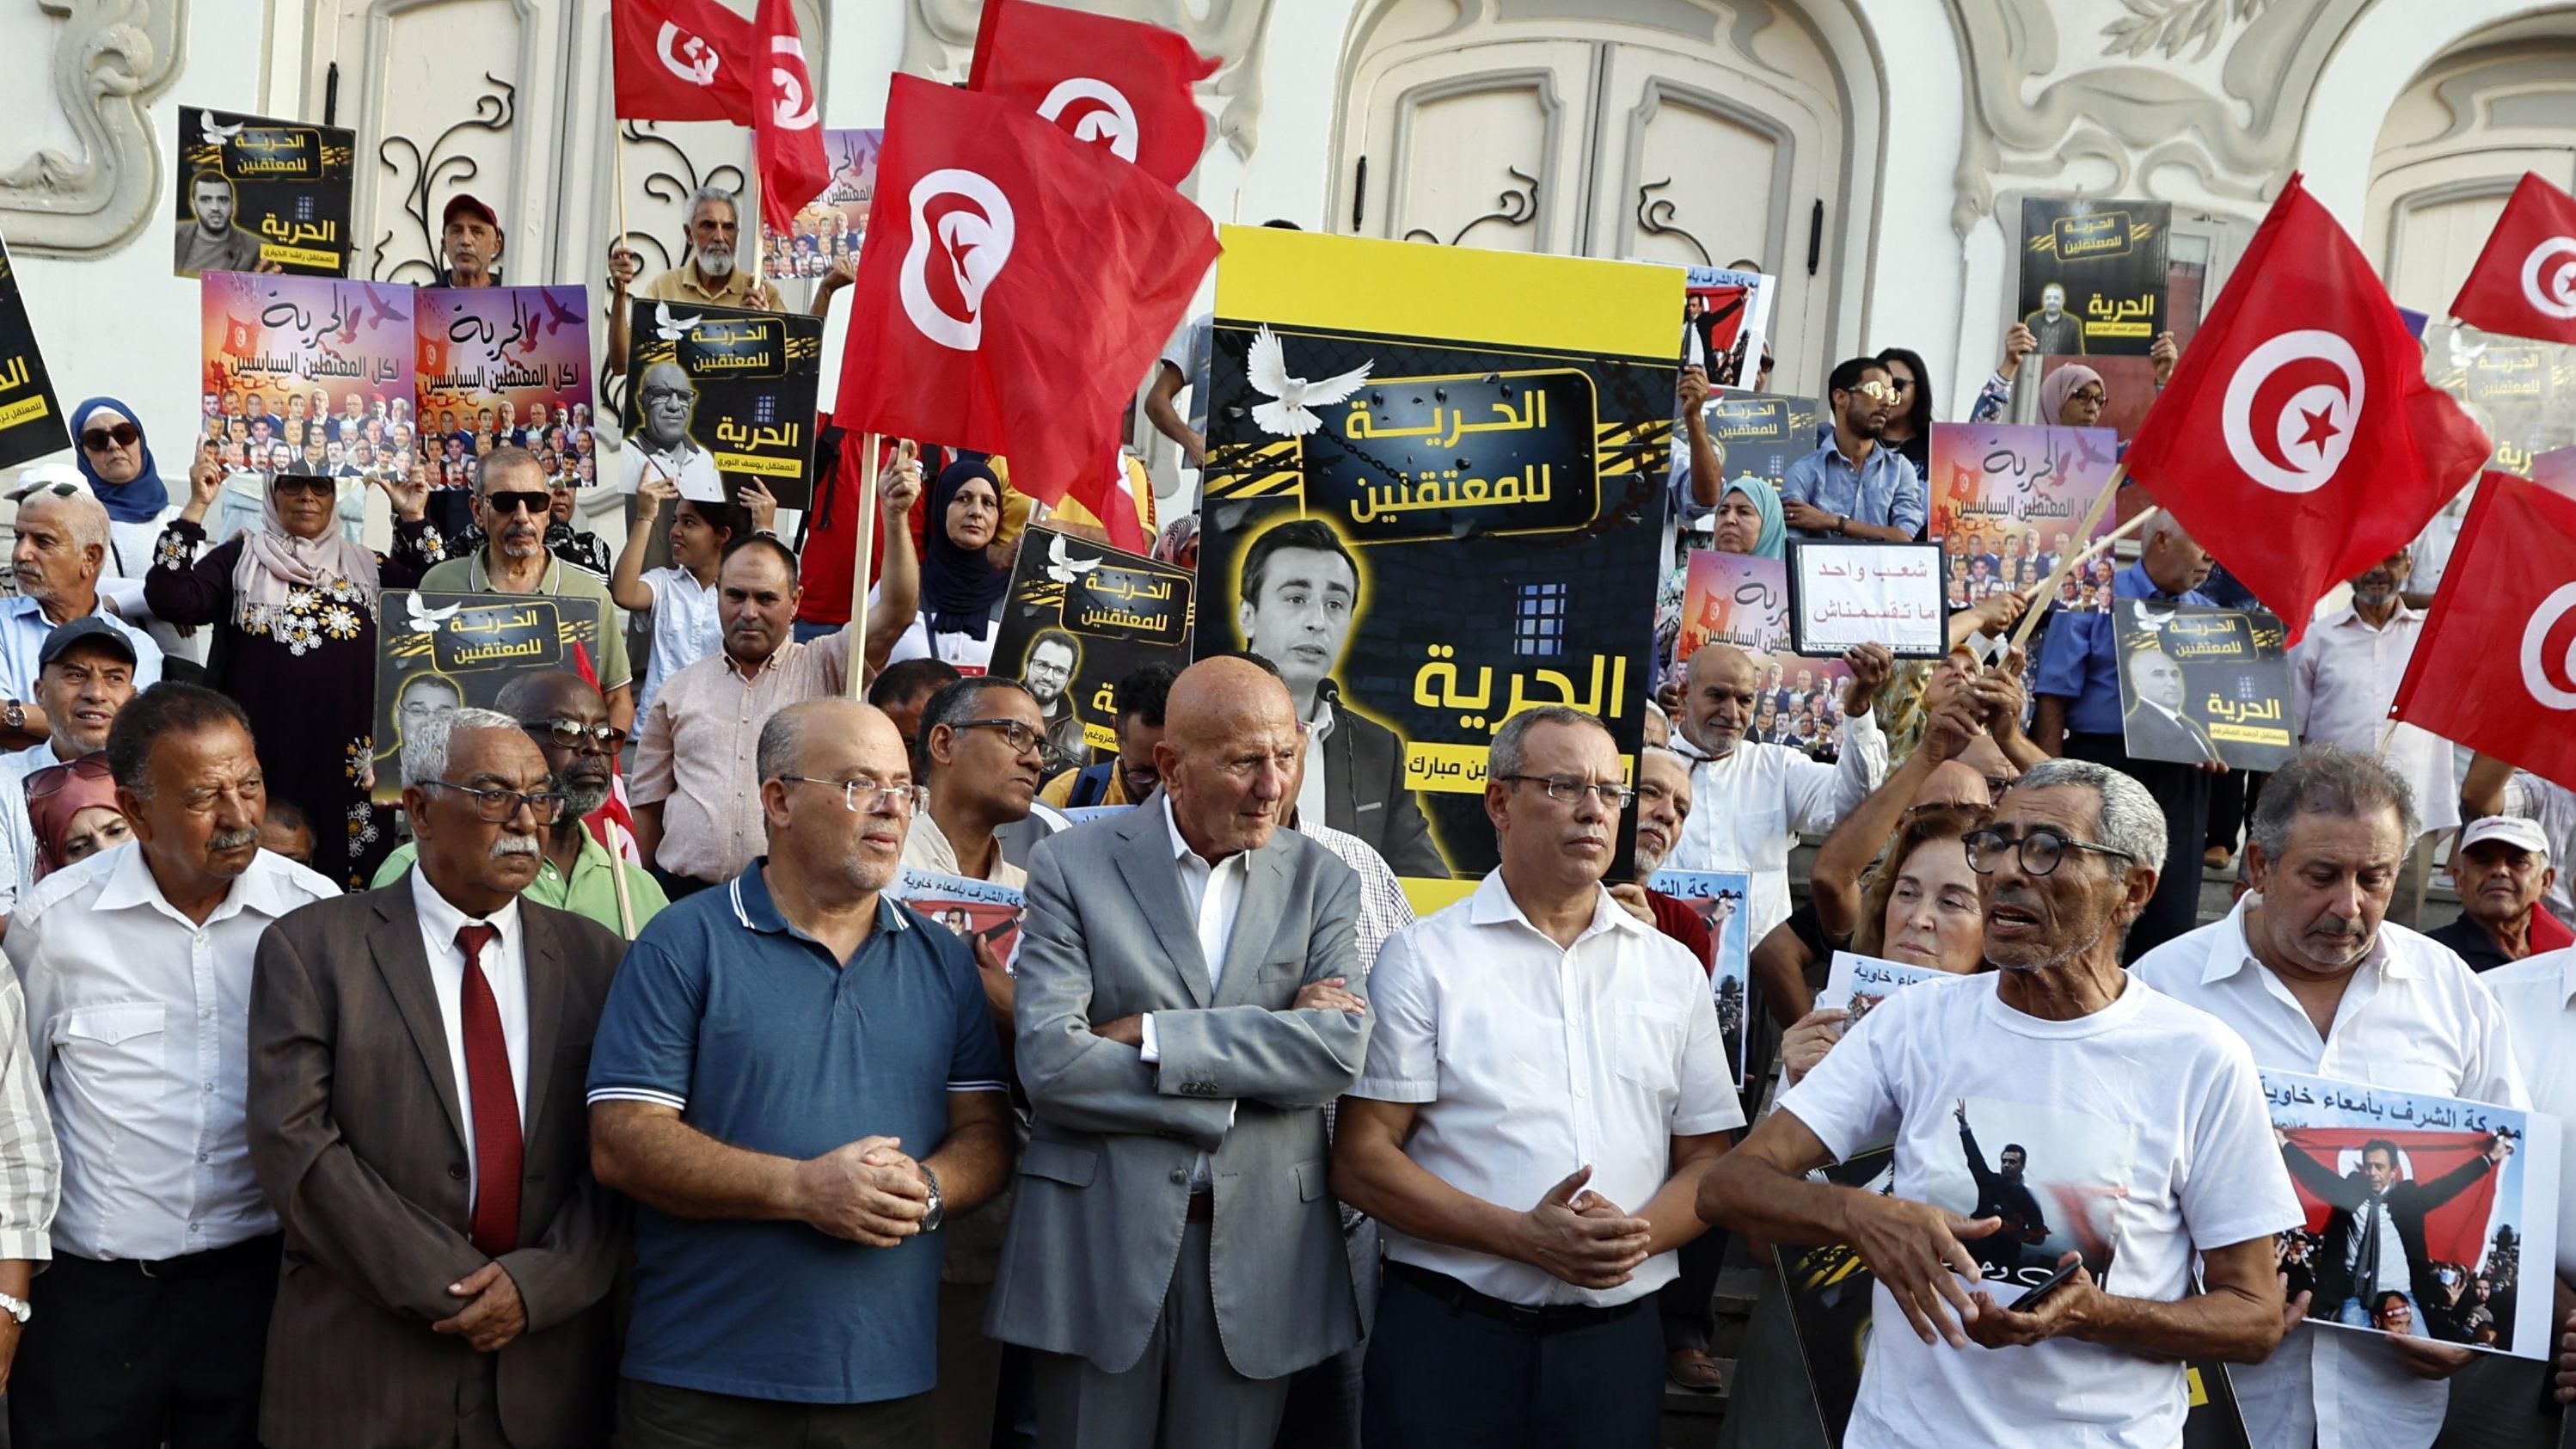 الإضراب عن الطعام في تونس آلية مضنية للاحتجاج